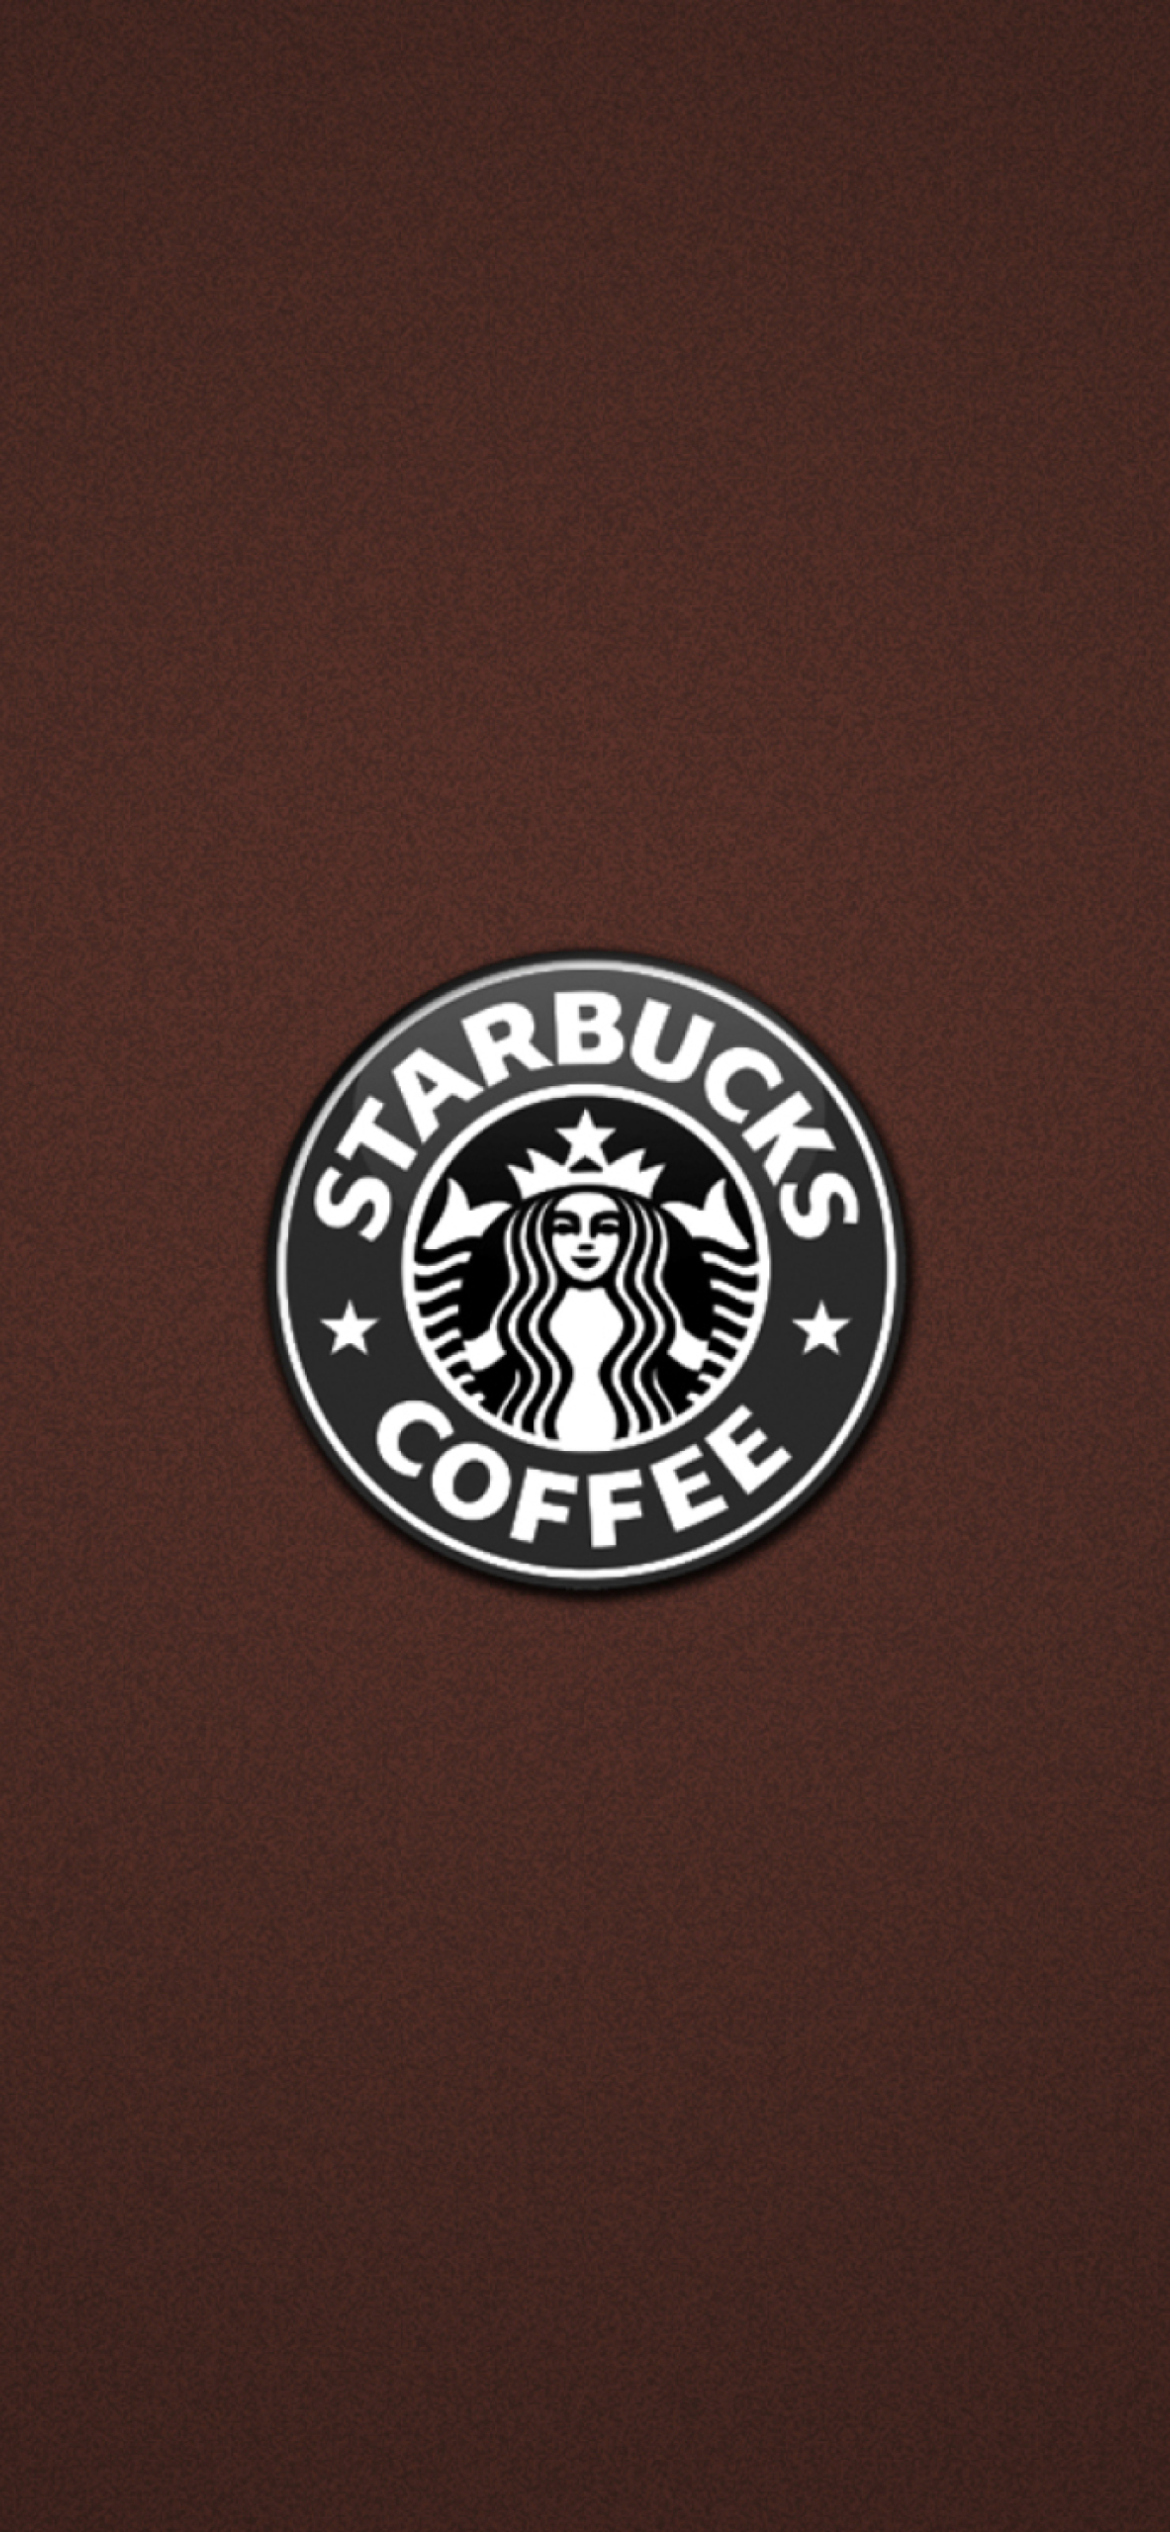 Обои Starbucks Coffee 1170x2532